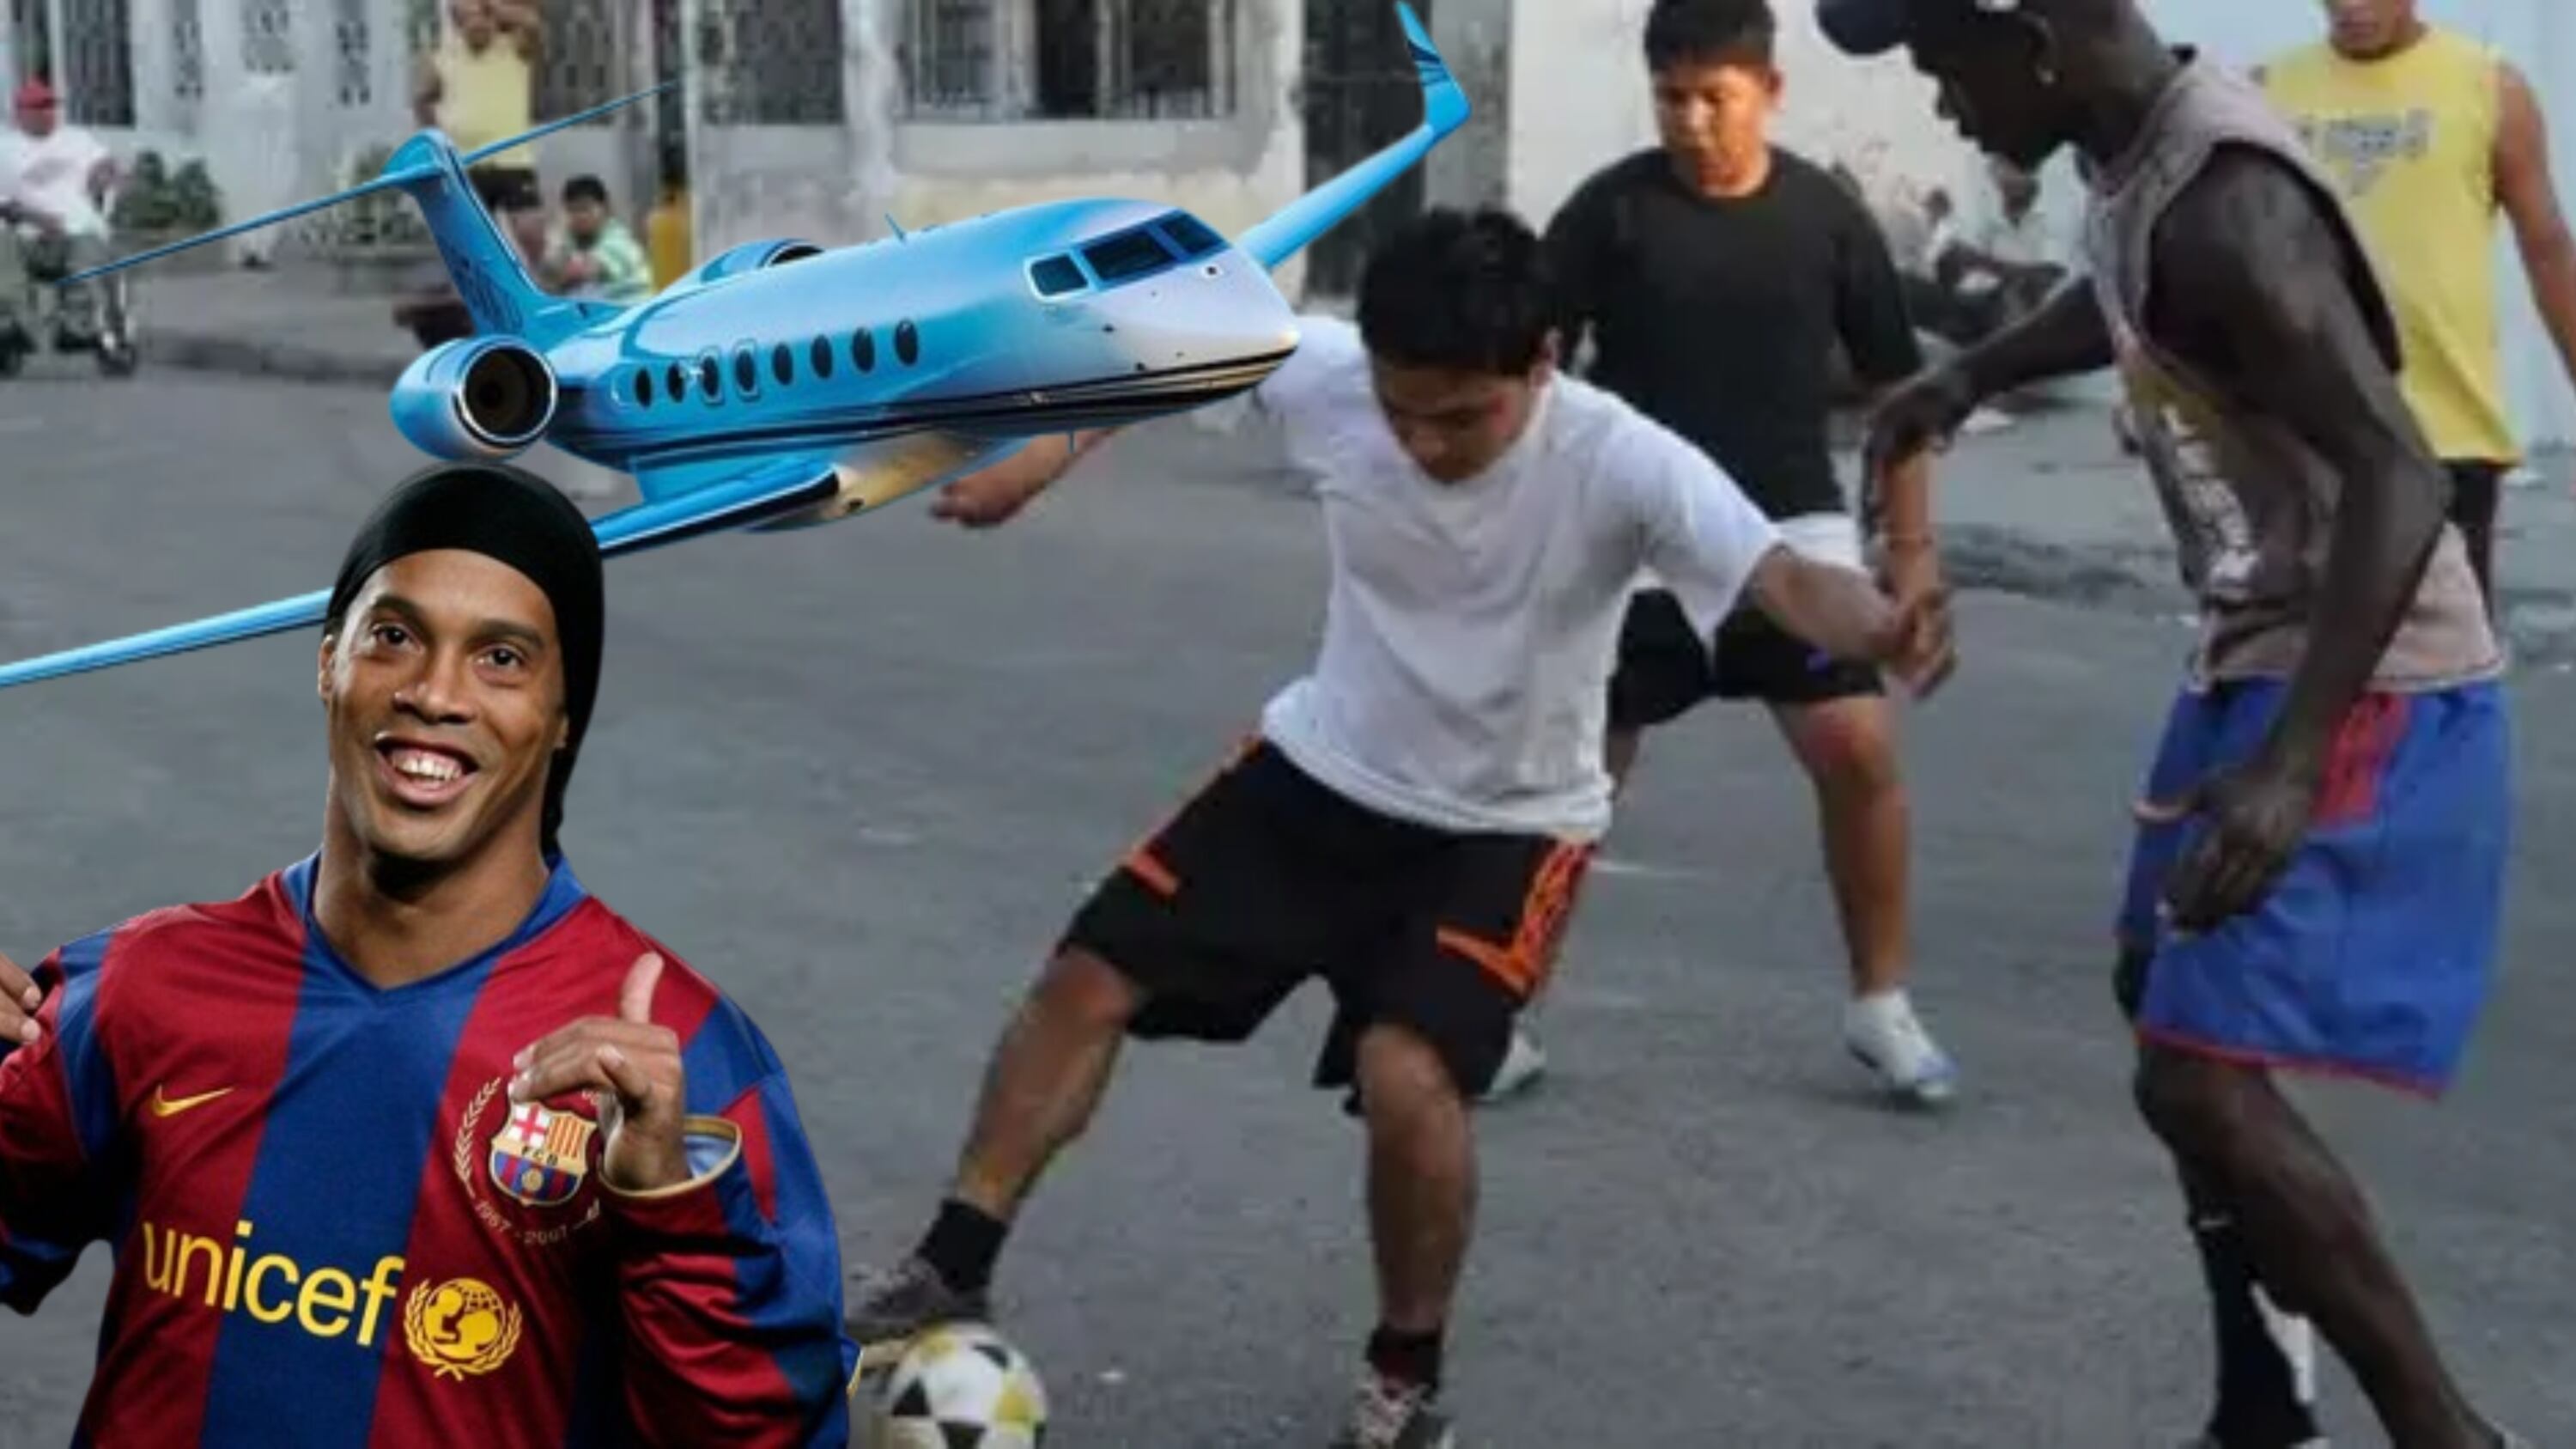 El jugador mexicano que pasó de jugar en la calle a tener un jet privado, como Ronaldinho